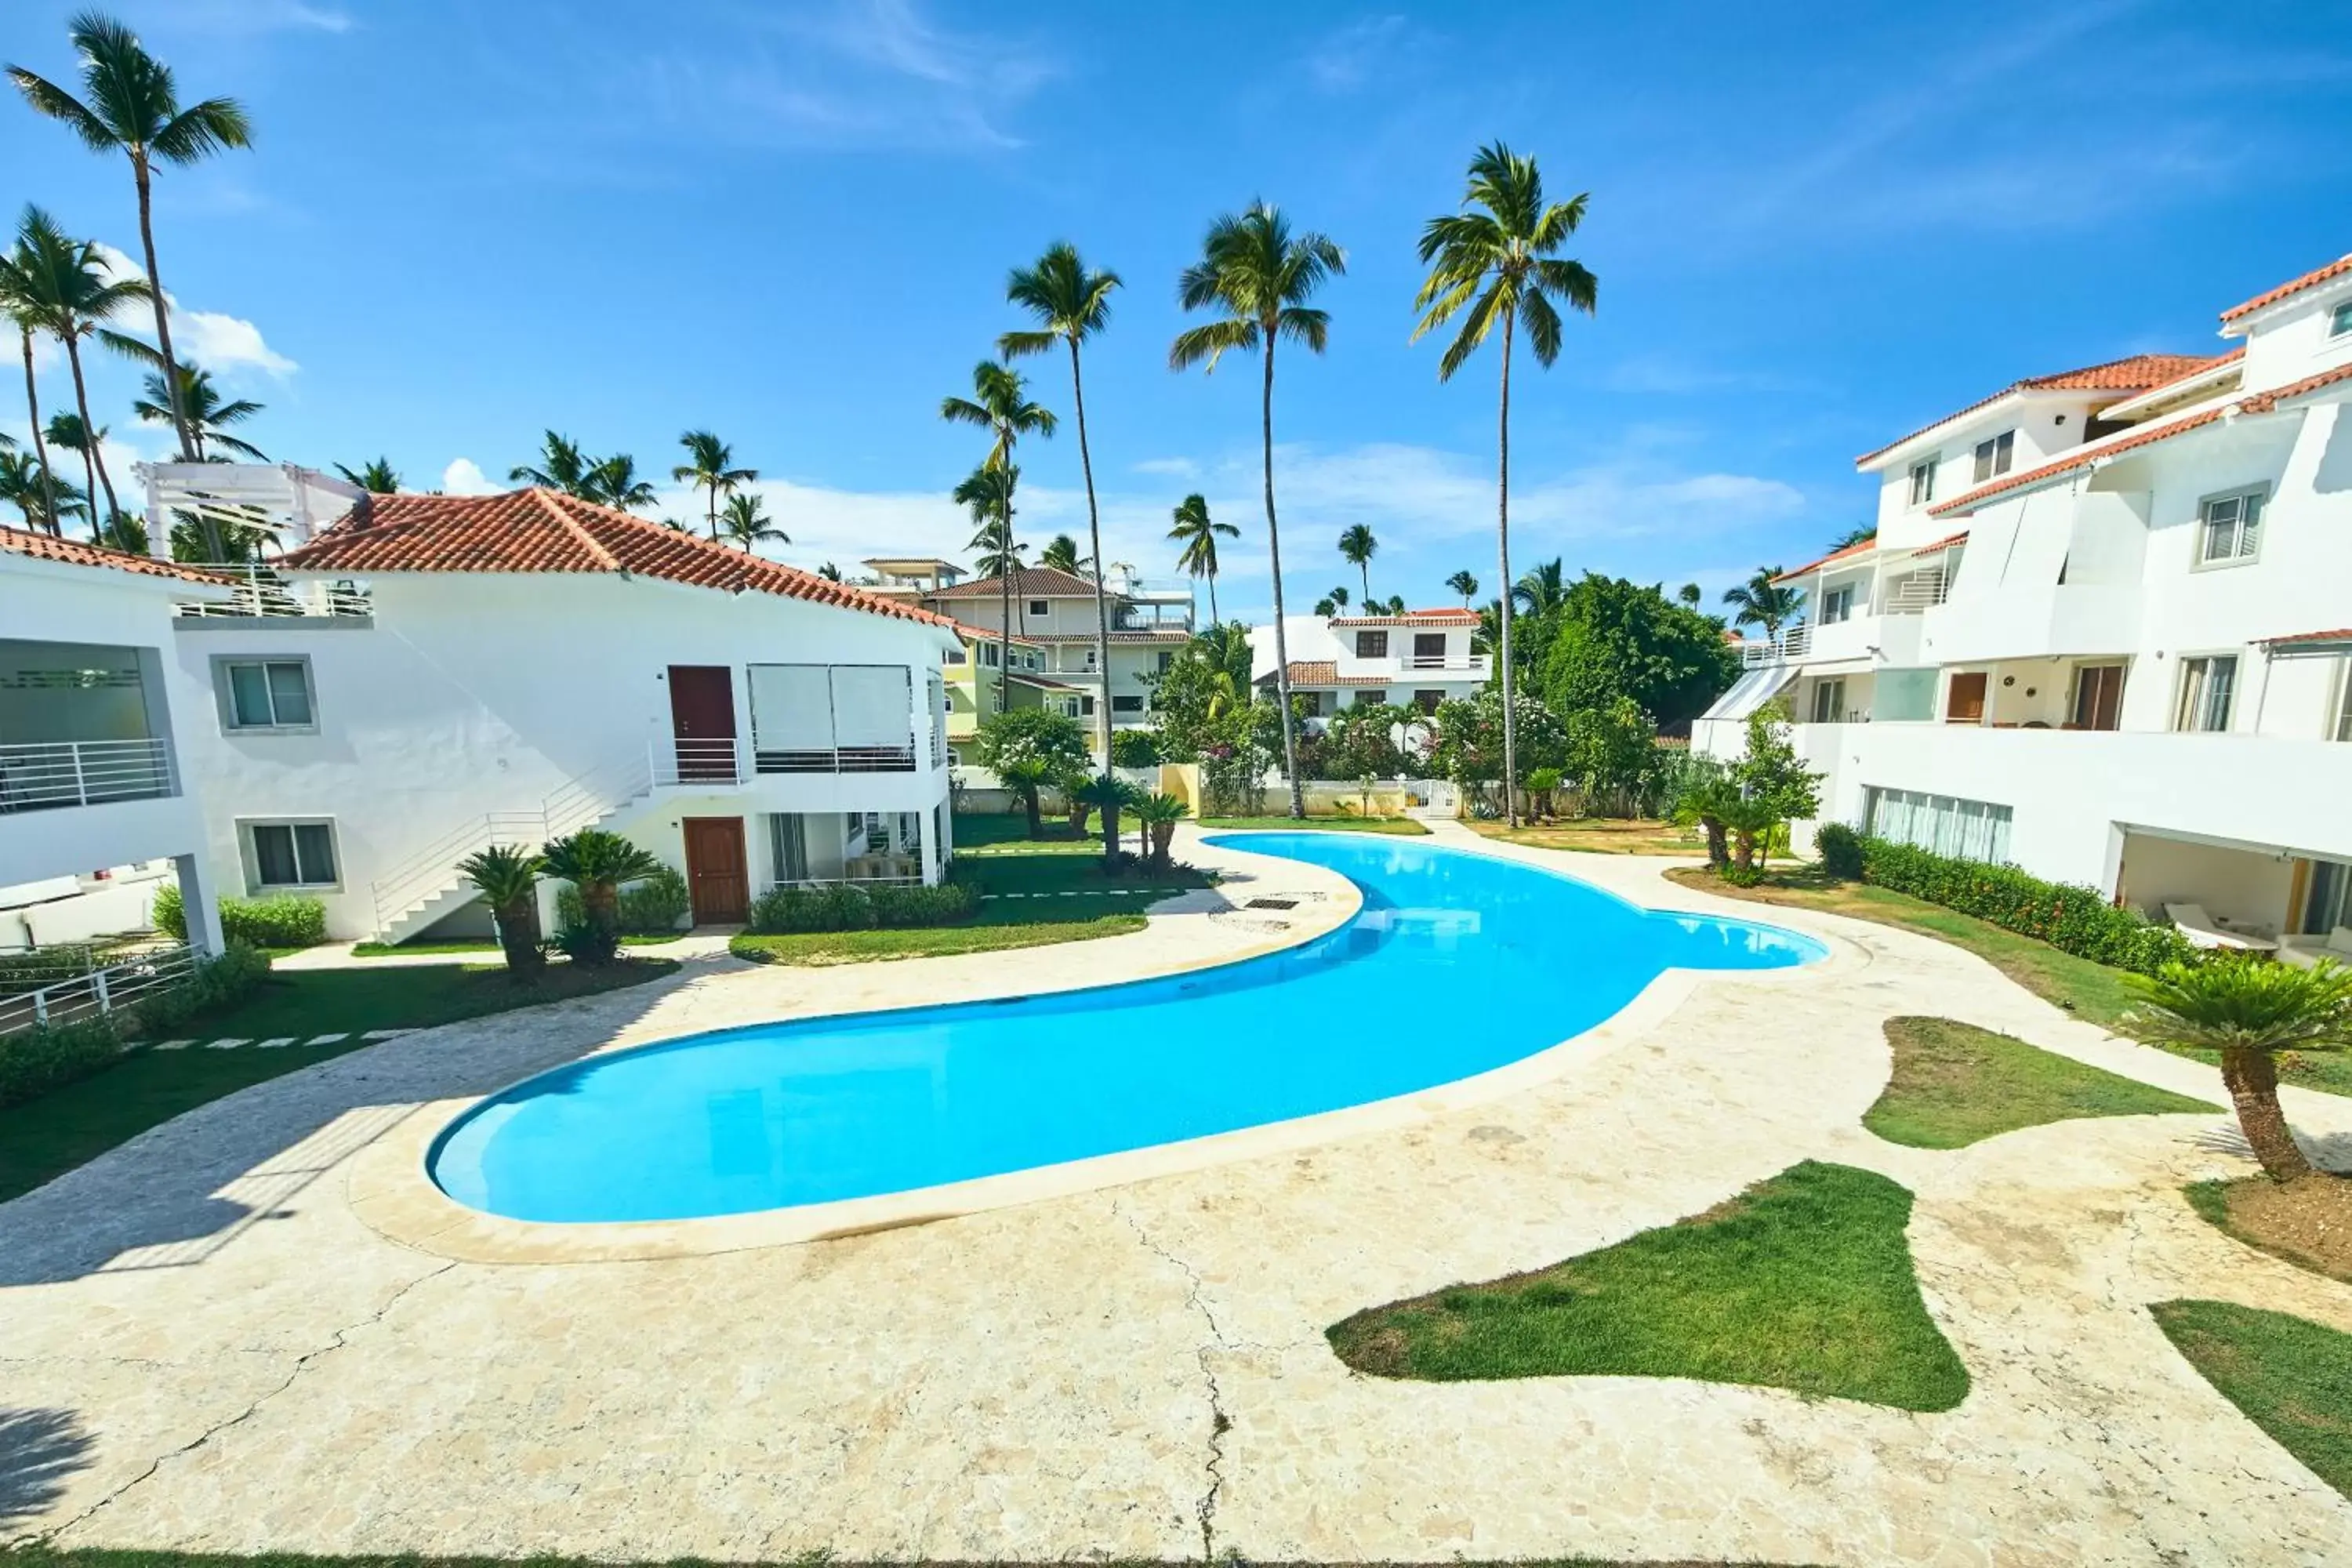 Property building, Swimming Pool in Las Terrazas Condo - Los Corales Village